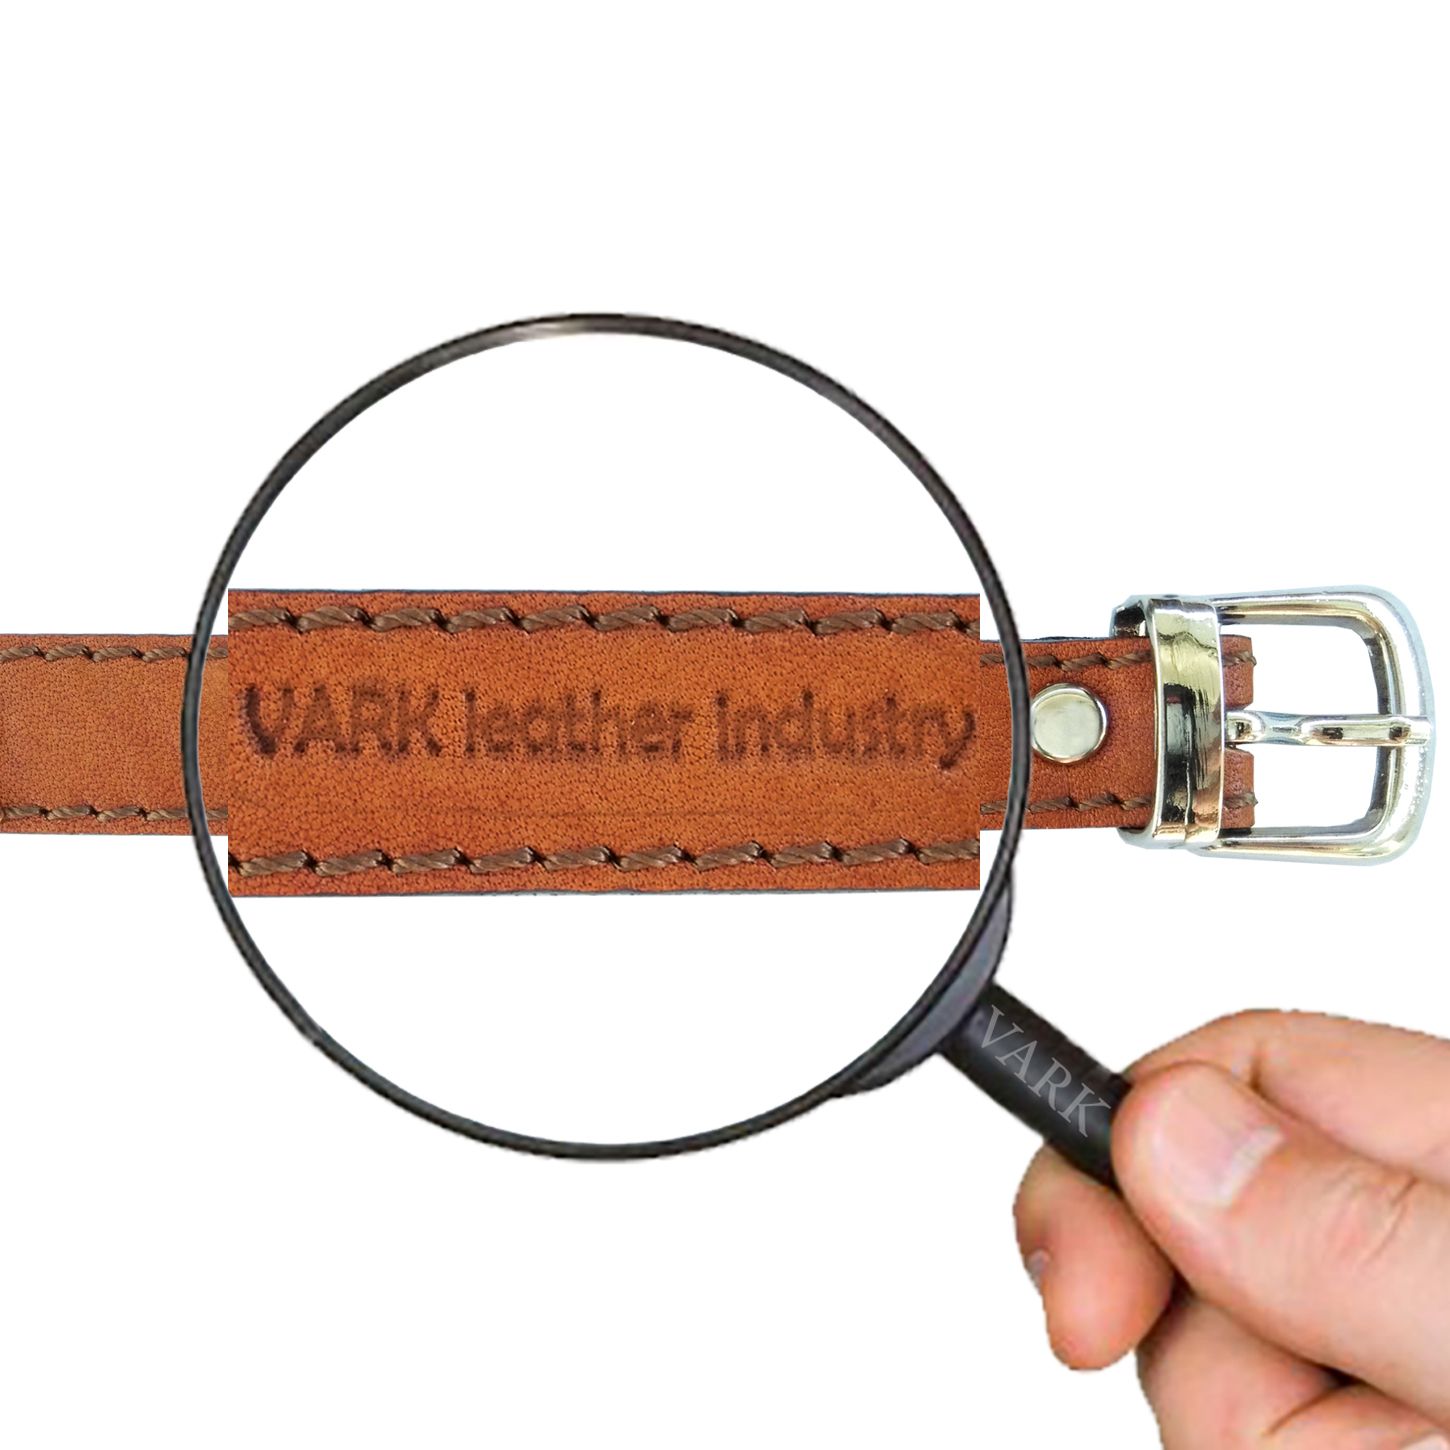  دستبند چرم وارک مدل آرت کد rb99 -  - 8